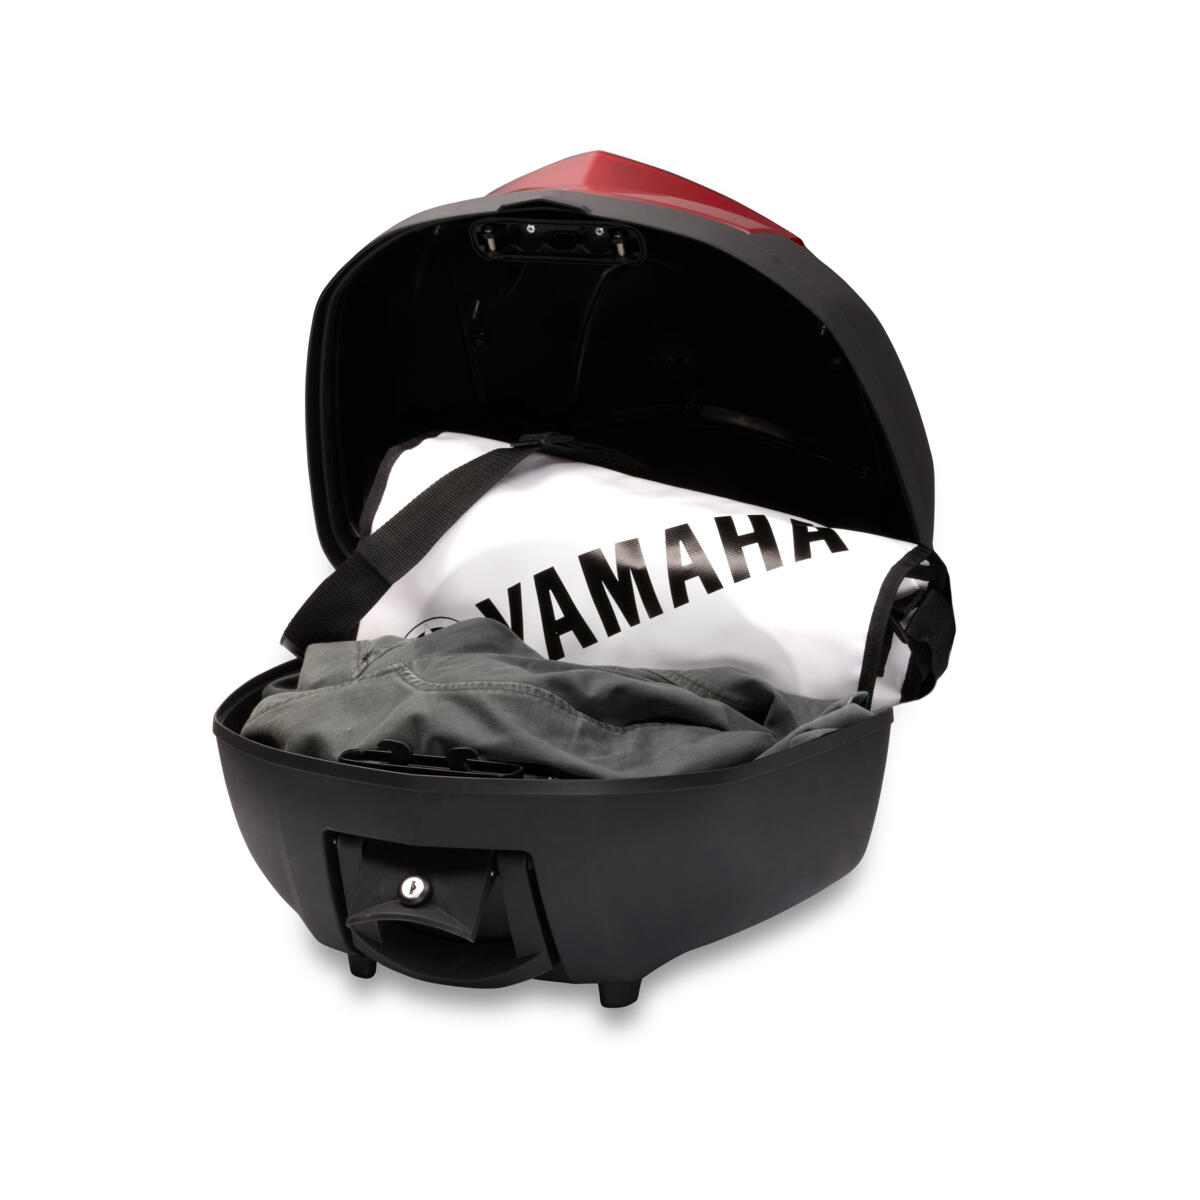 Laadukas takalaukku Yamahaan ylimääräistä matkatavara-/säilytystilaa varten.